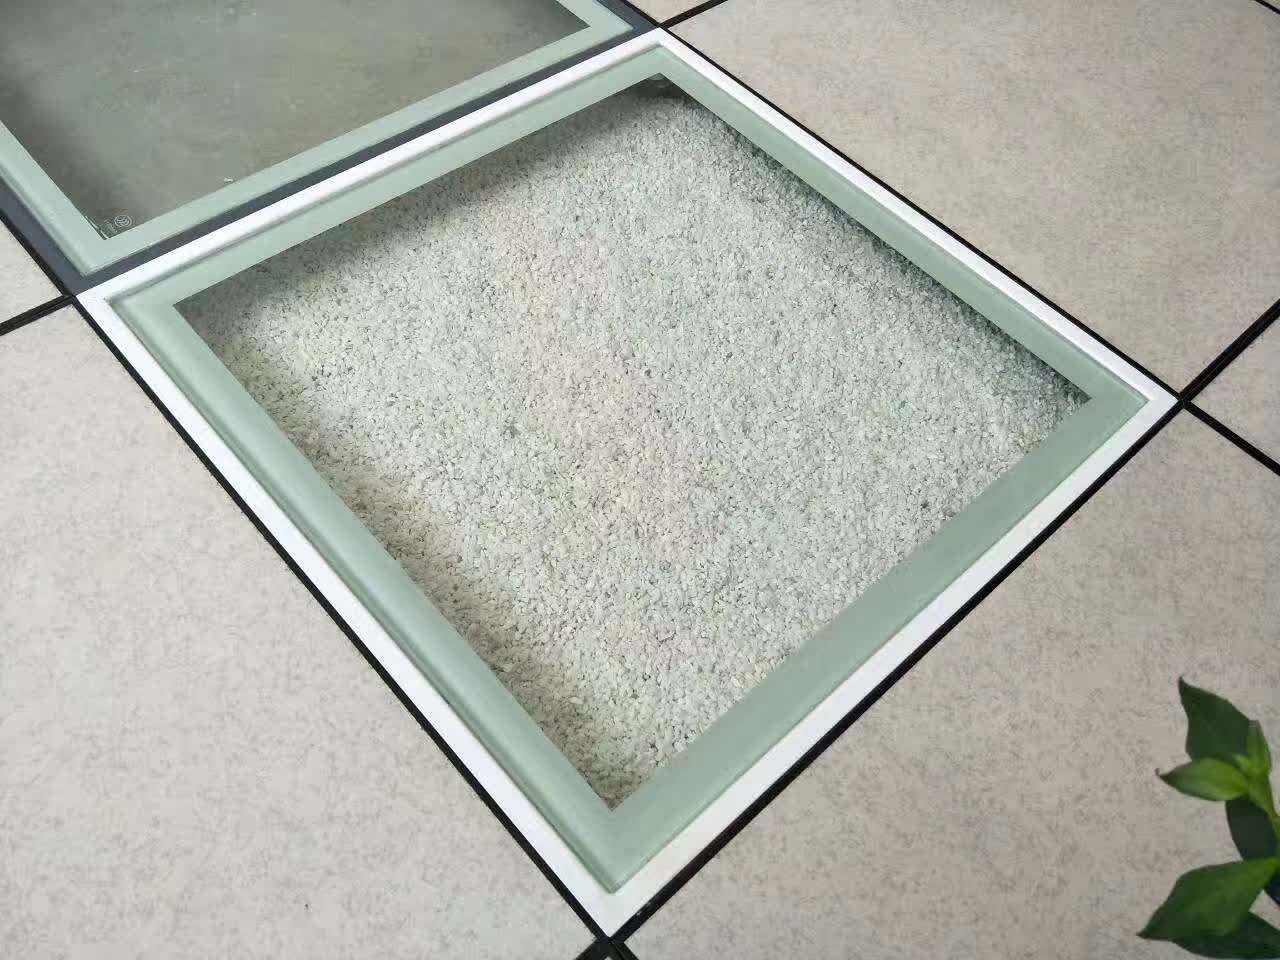 玻璃地板西安众鑫机房防静电地板厂家玻璃架空地板